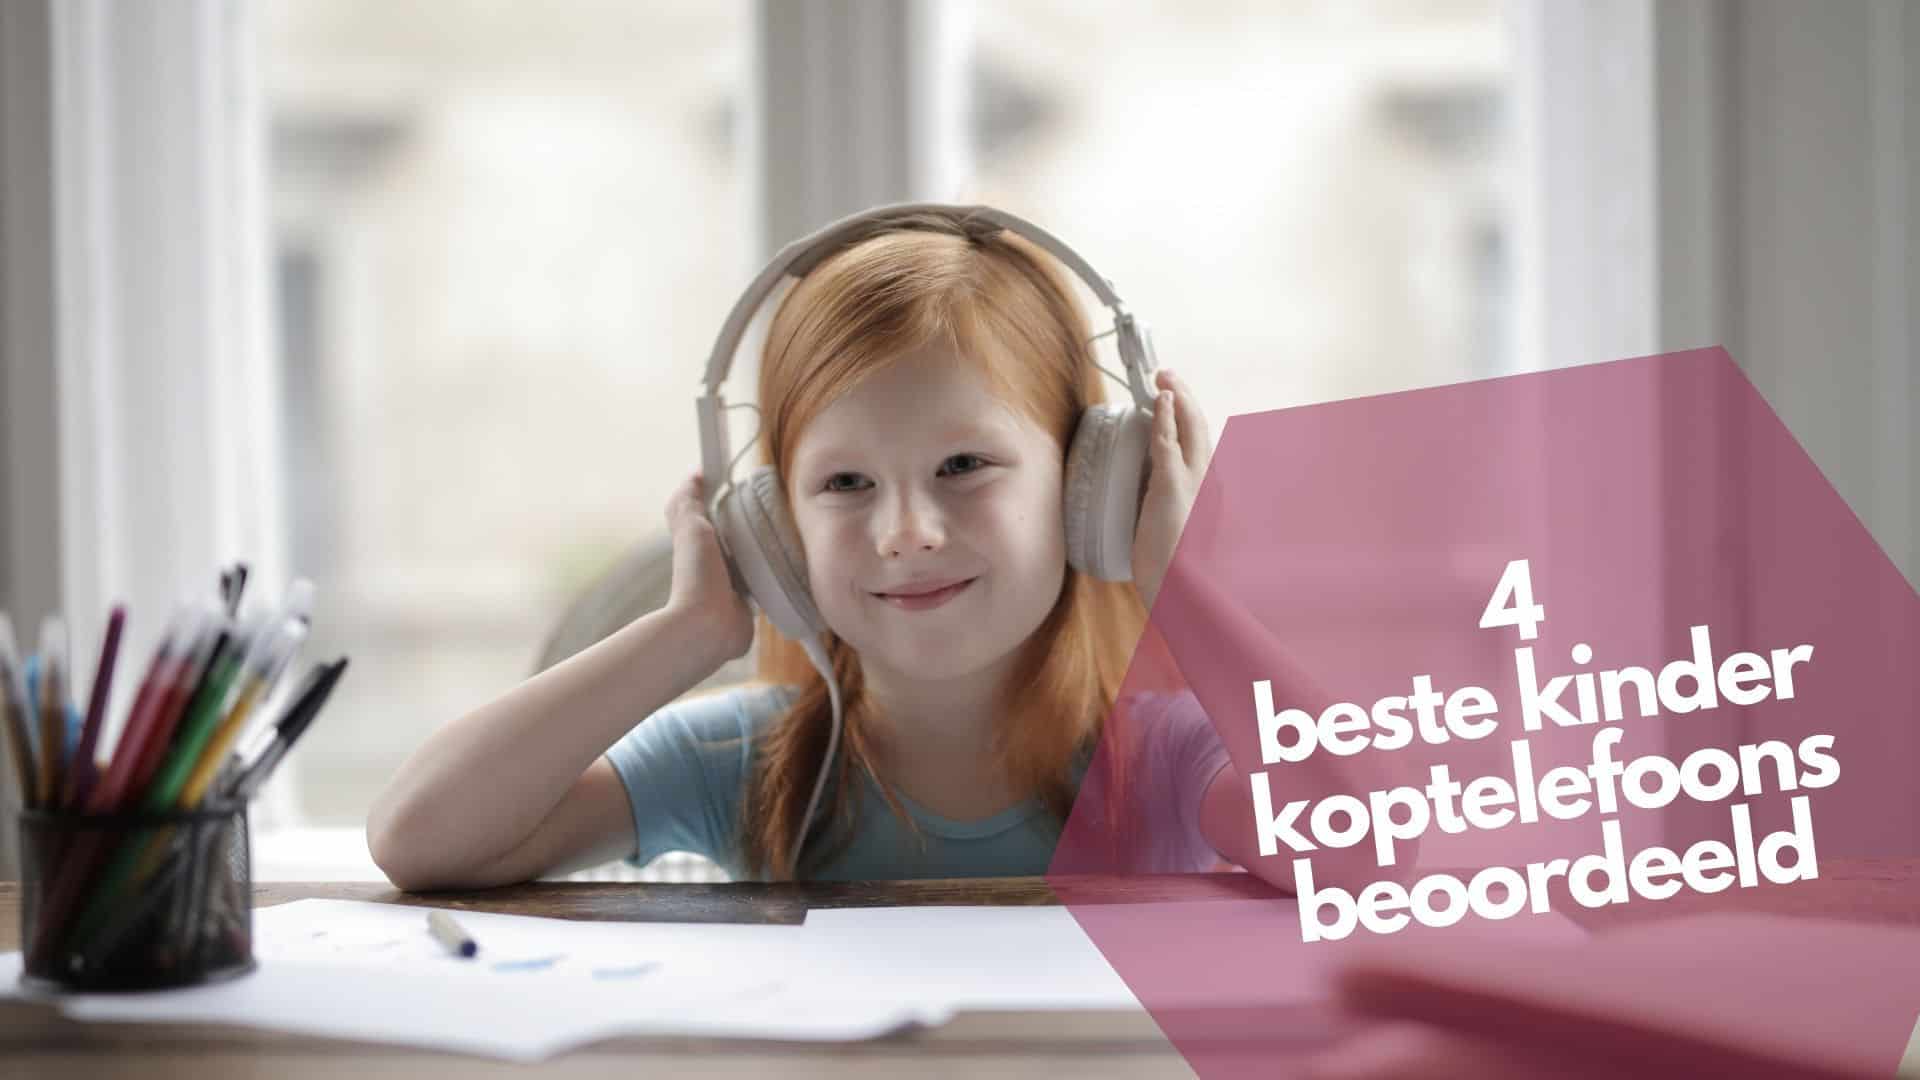 4 Best Kids Headphones Reviewed